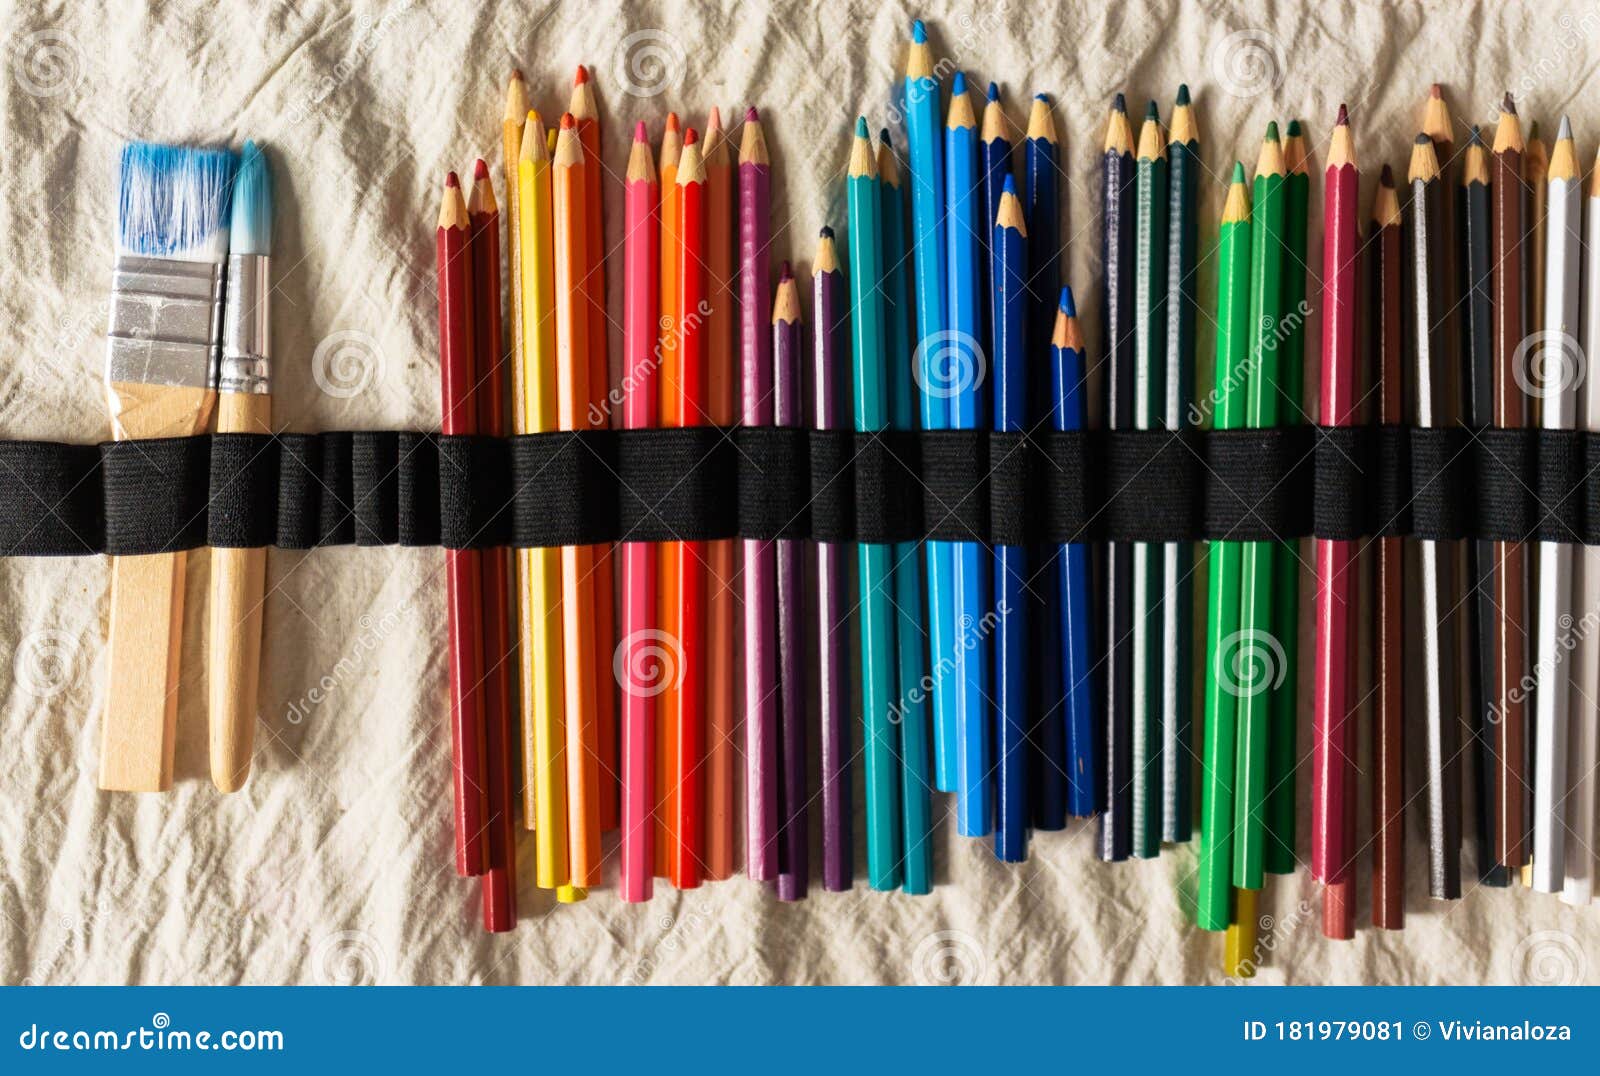 Estuche Lleno De Lápices De Colores Imagen de archivo - Imagen de cabritos,  fondo: 181979081